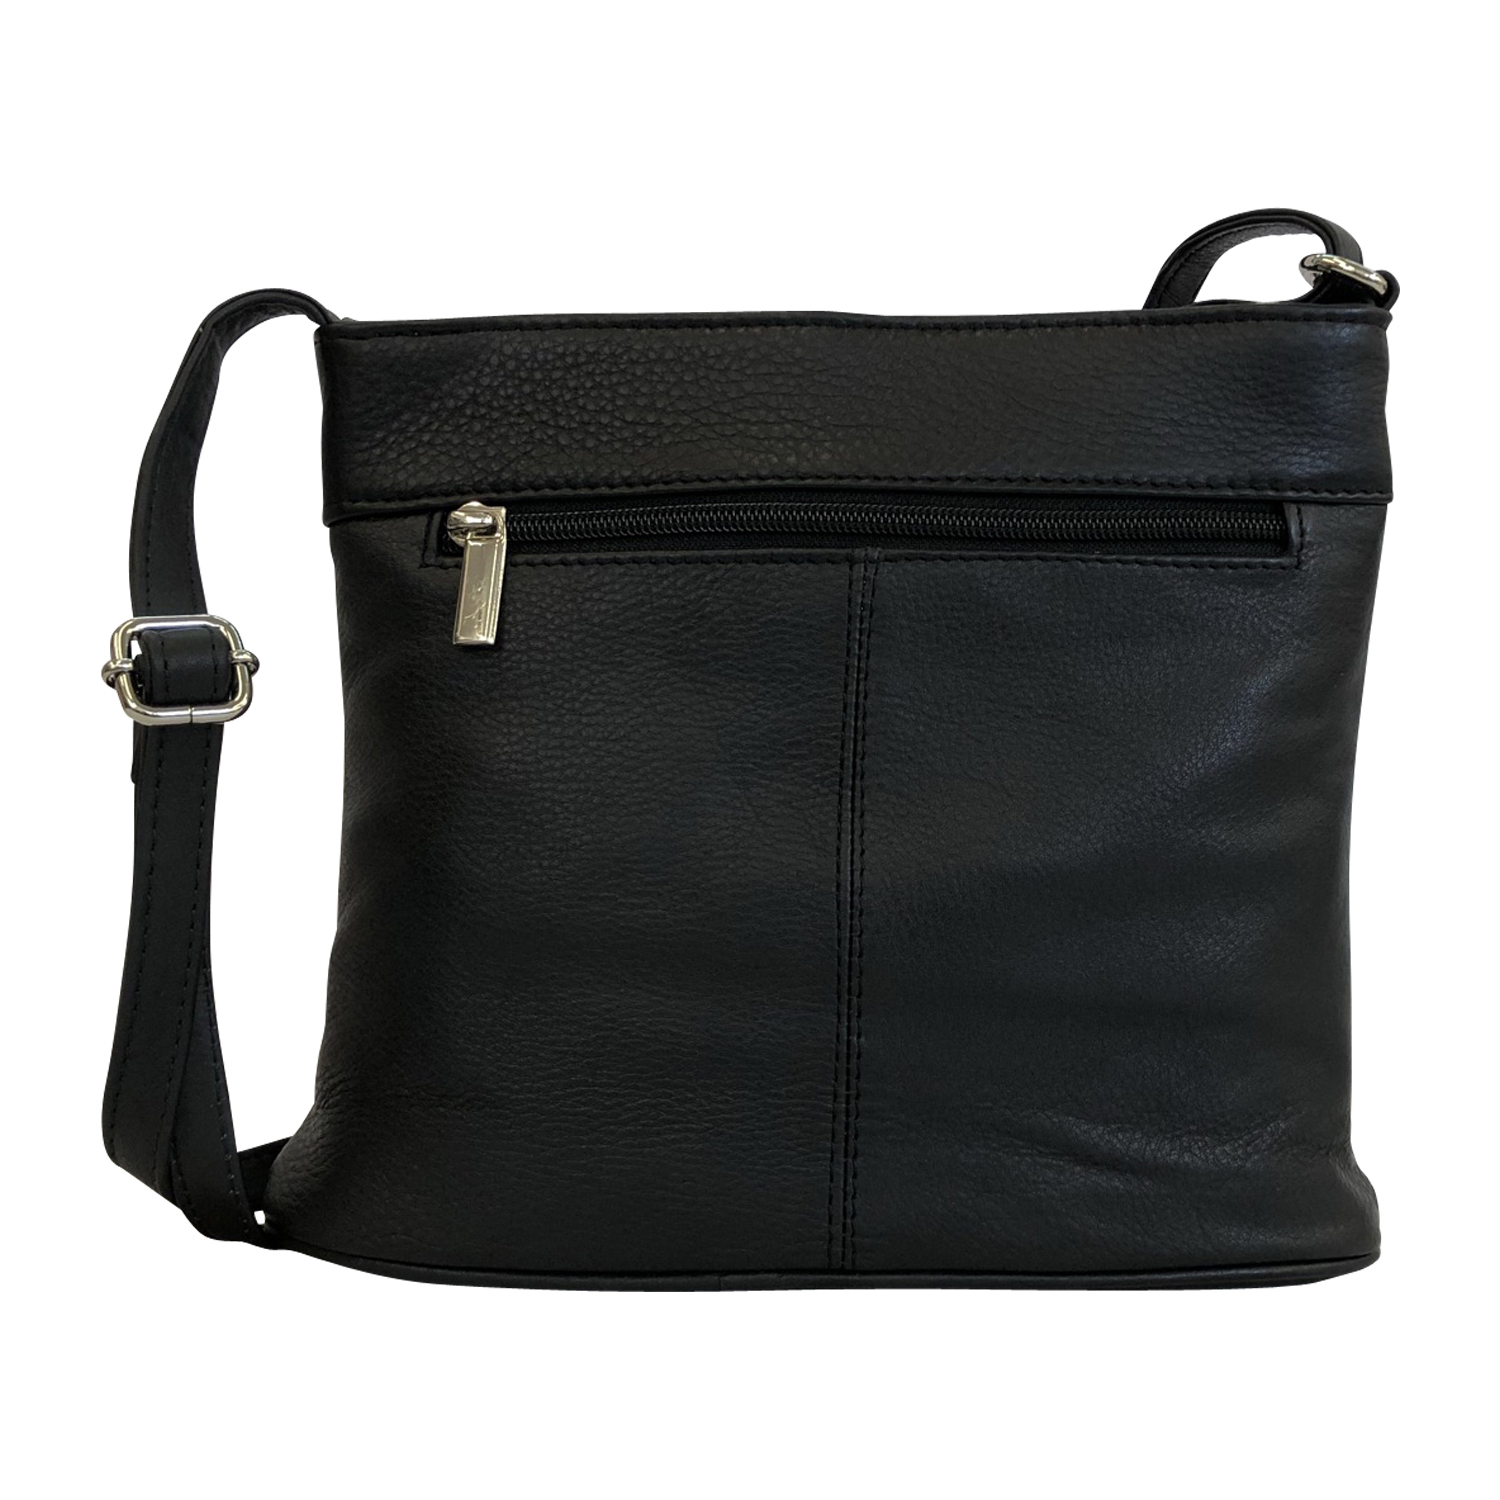 Handtasche CININO 2 SHADE Ledertasche Leder Schultertasche 1465 Tasche Bag ROT